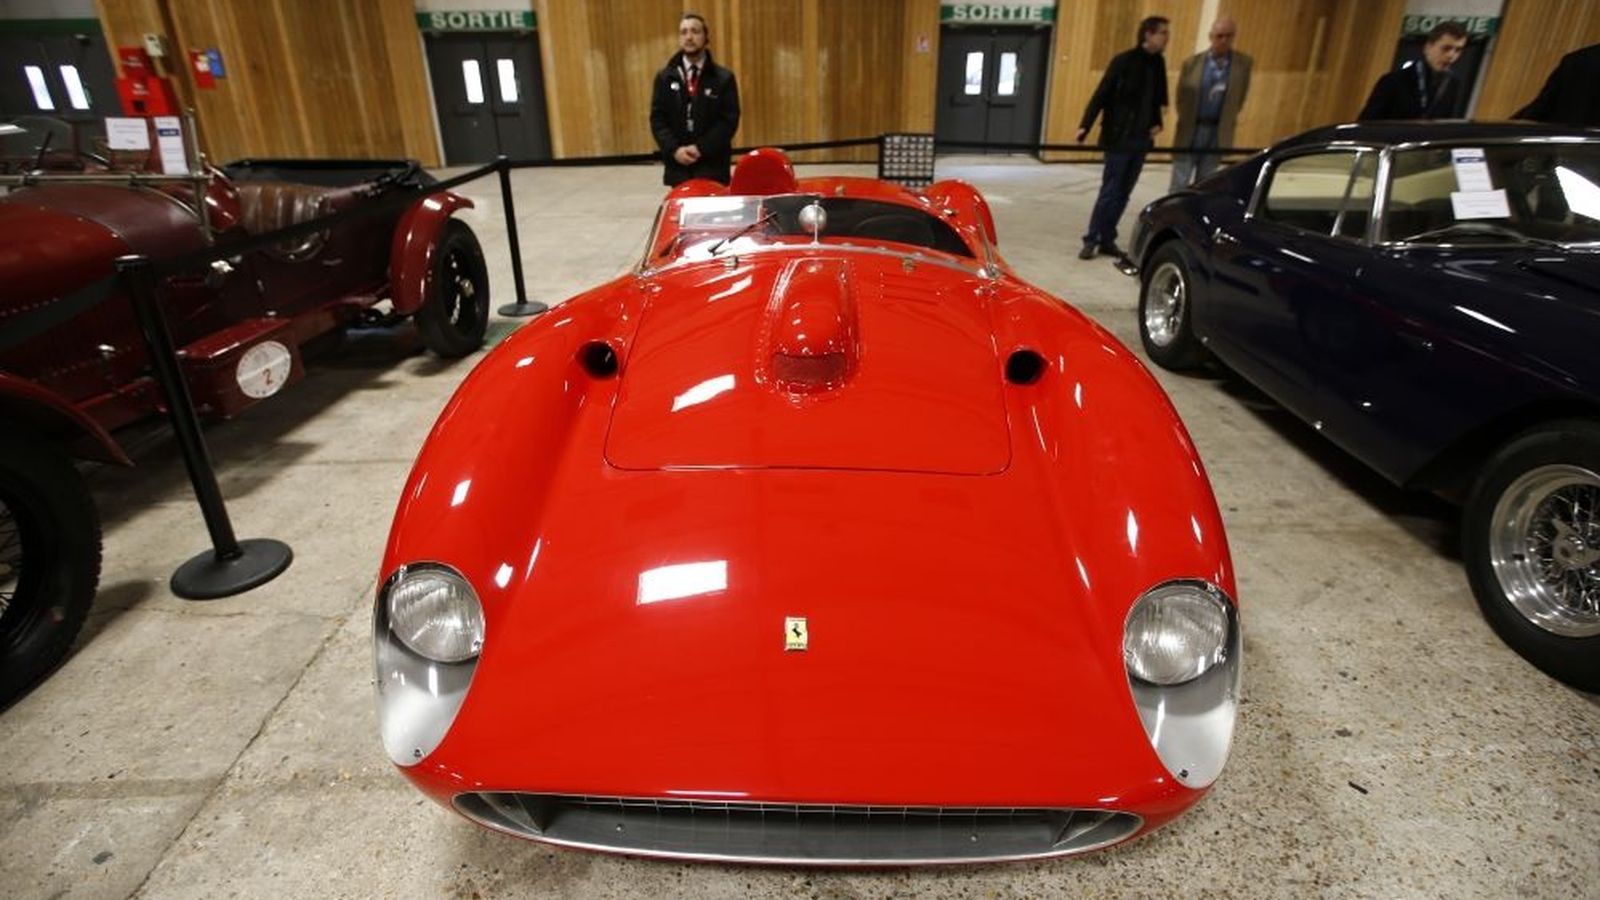 Foto: El Ferrari 335S expuesto en París.